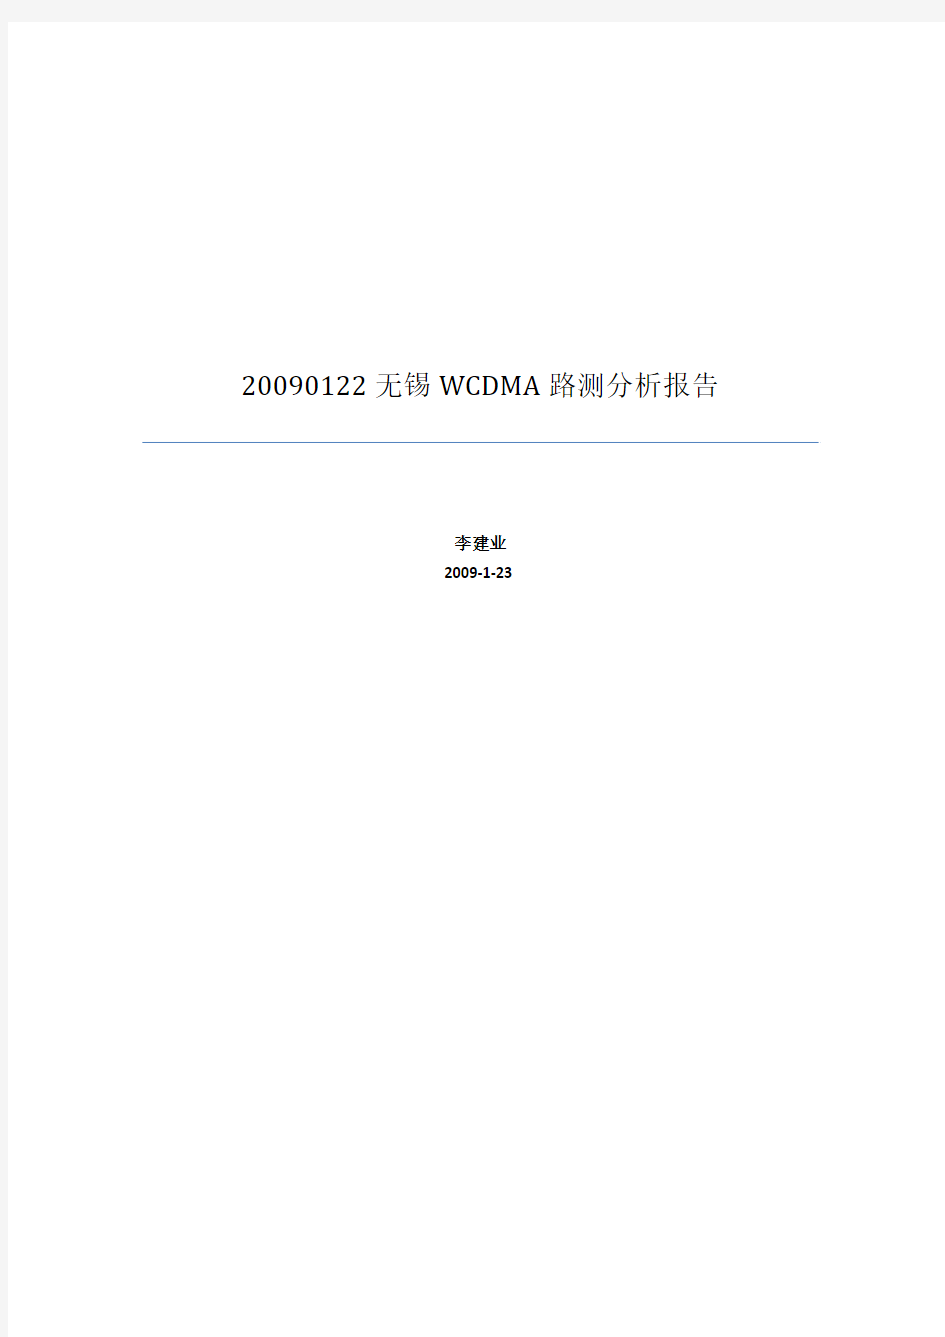 20090122无锡WCDMA路测分析报告(李建业)